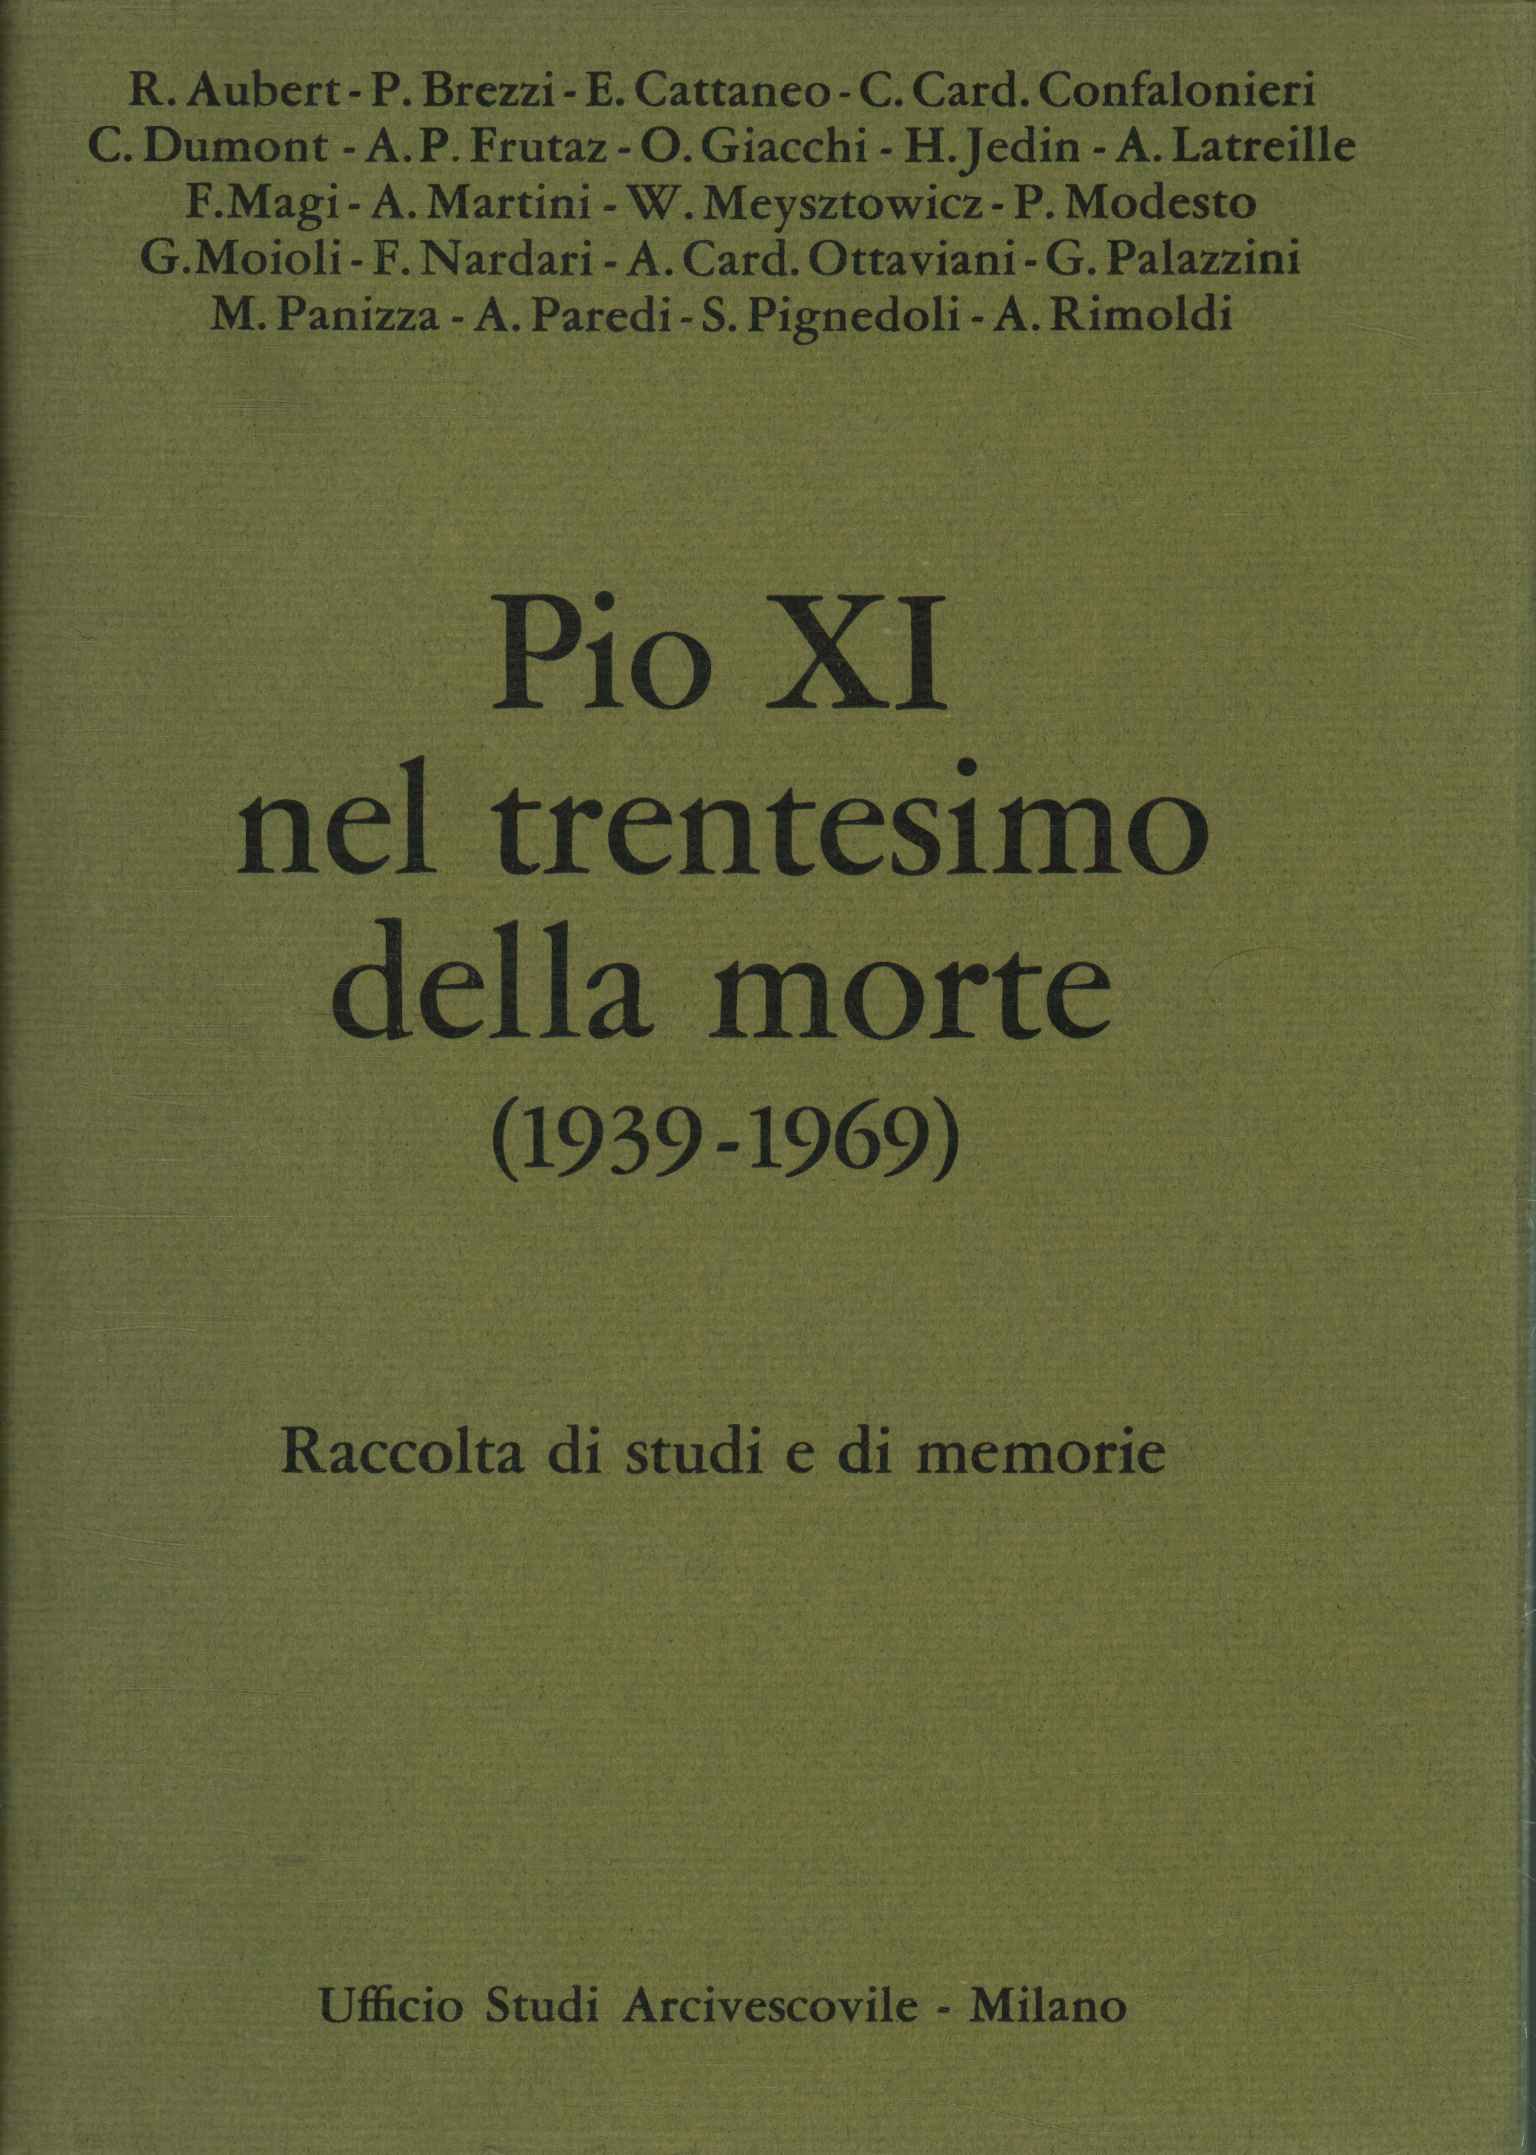 Pio XI nel trentesimo della morte (193